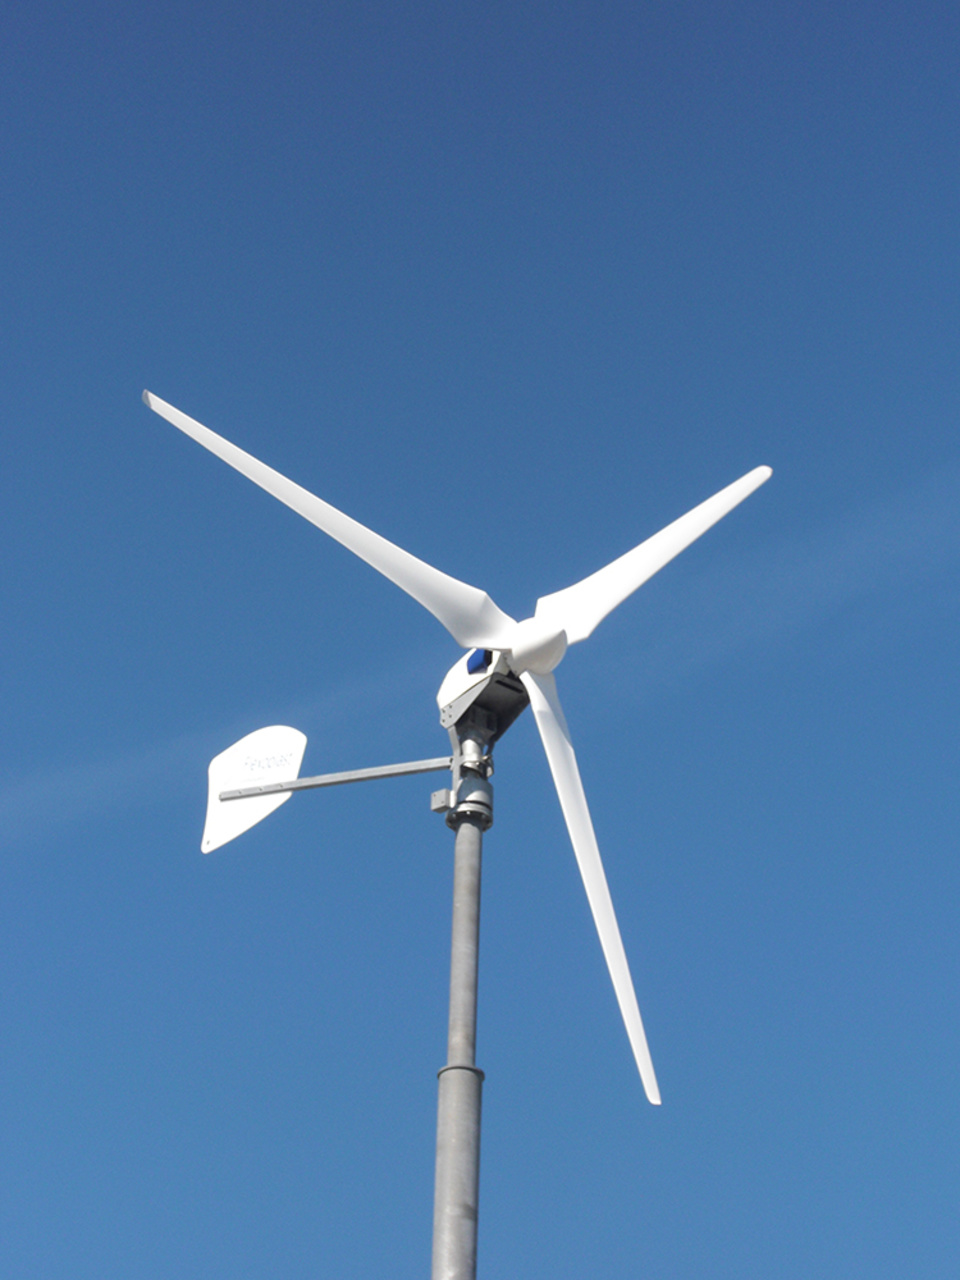 Windkraft2 bei Bittner & Kämpf Video- Tv- HiFi GmbH in Rodgau (Jügesheim)